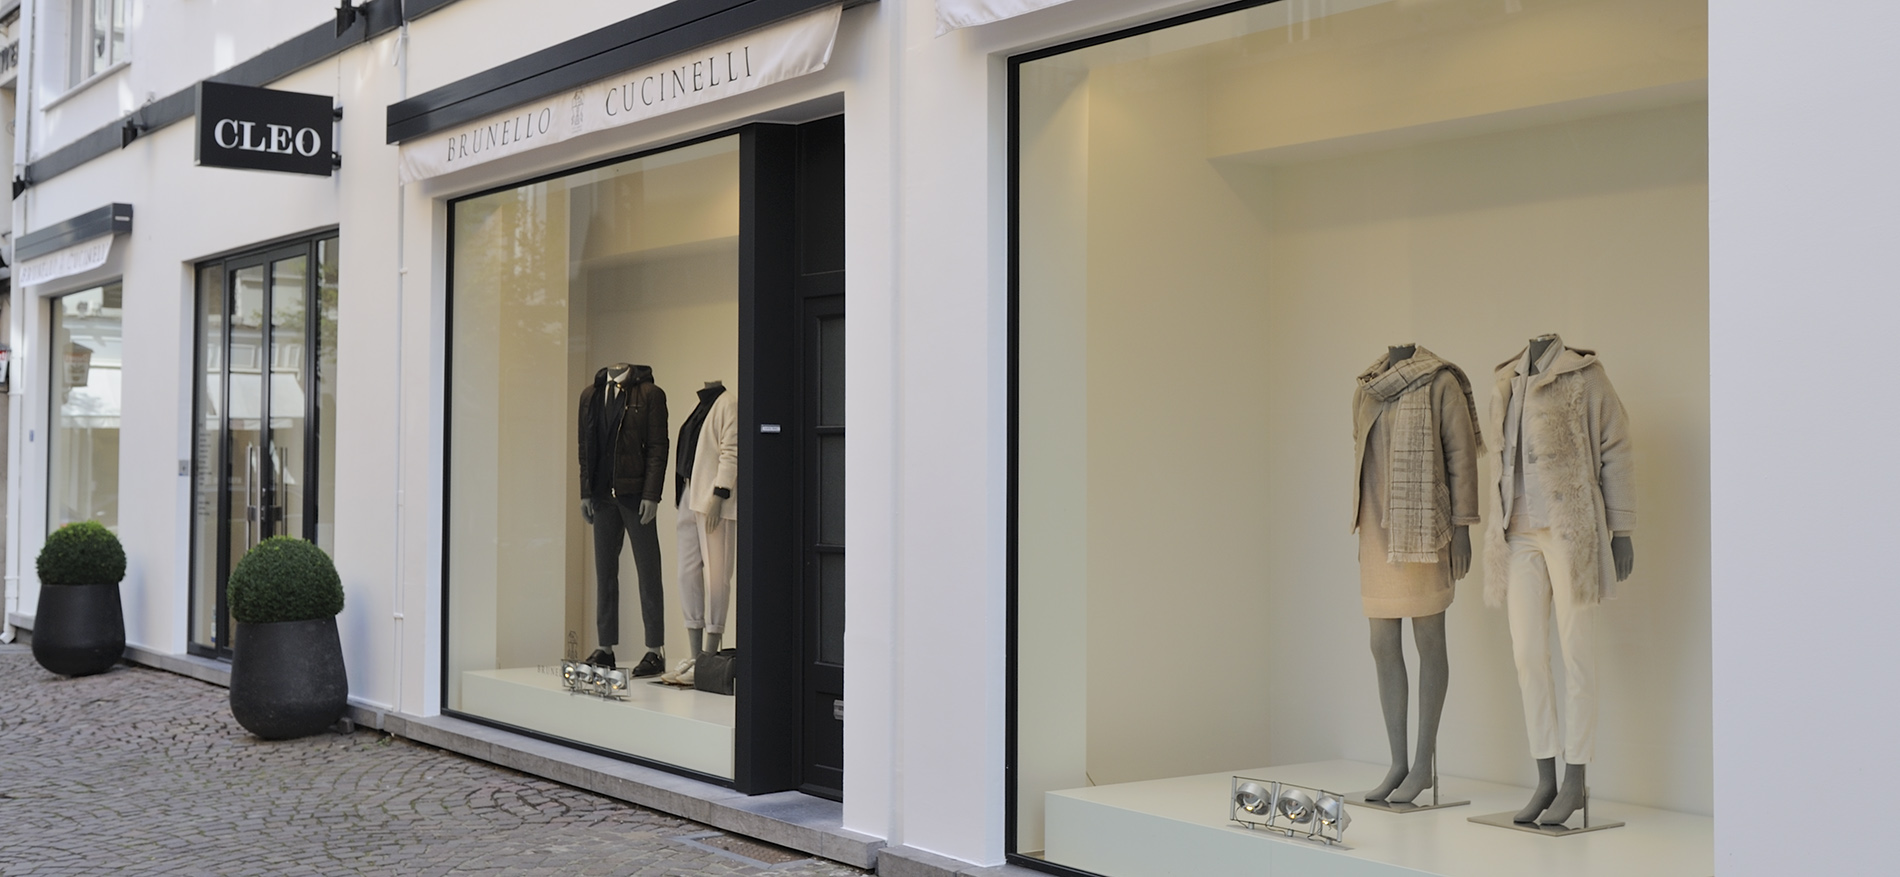 Brunello Cucinelli by Cleo – Antwerpen: Winkelinrichting modelabel - Mode